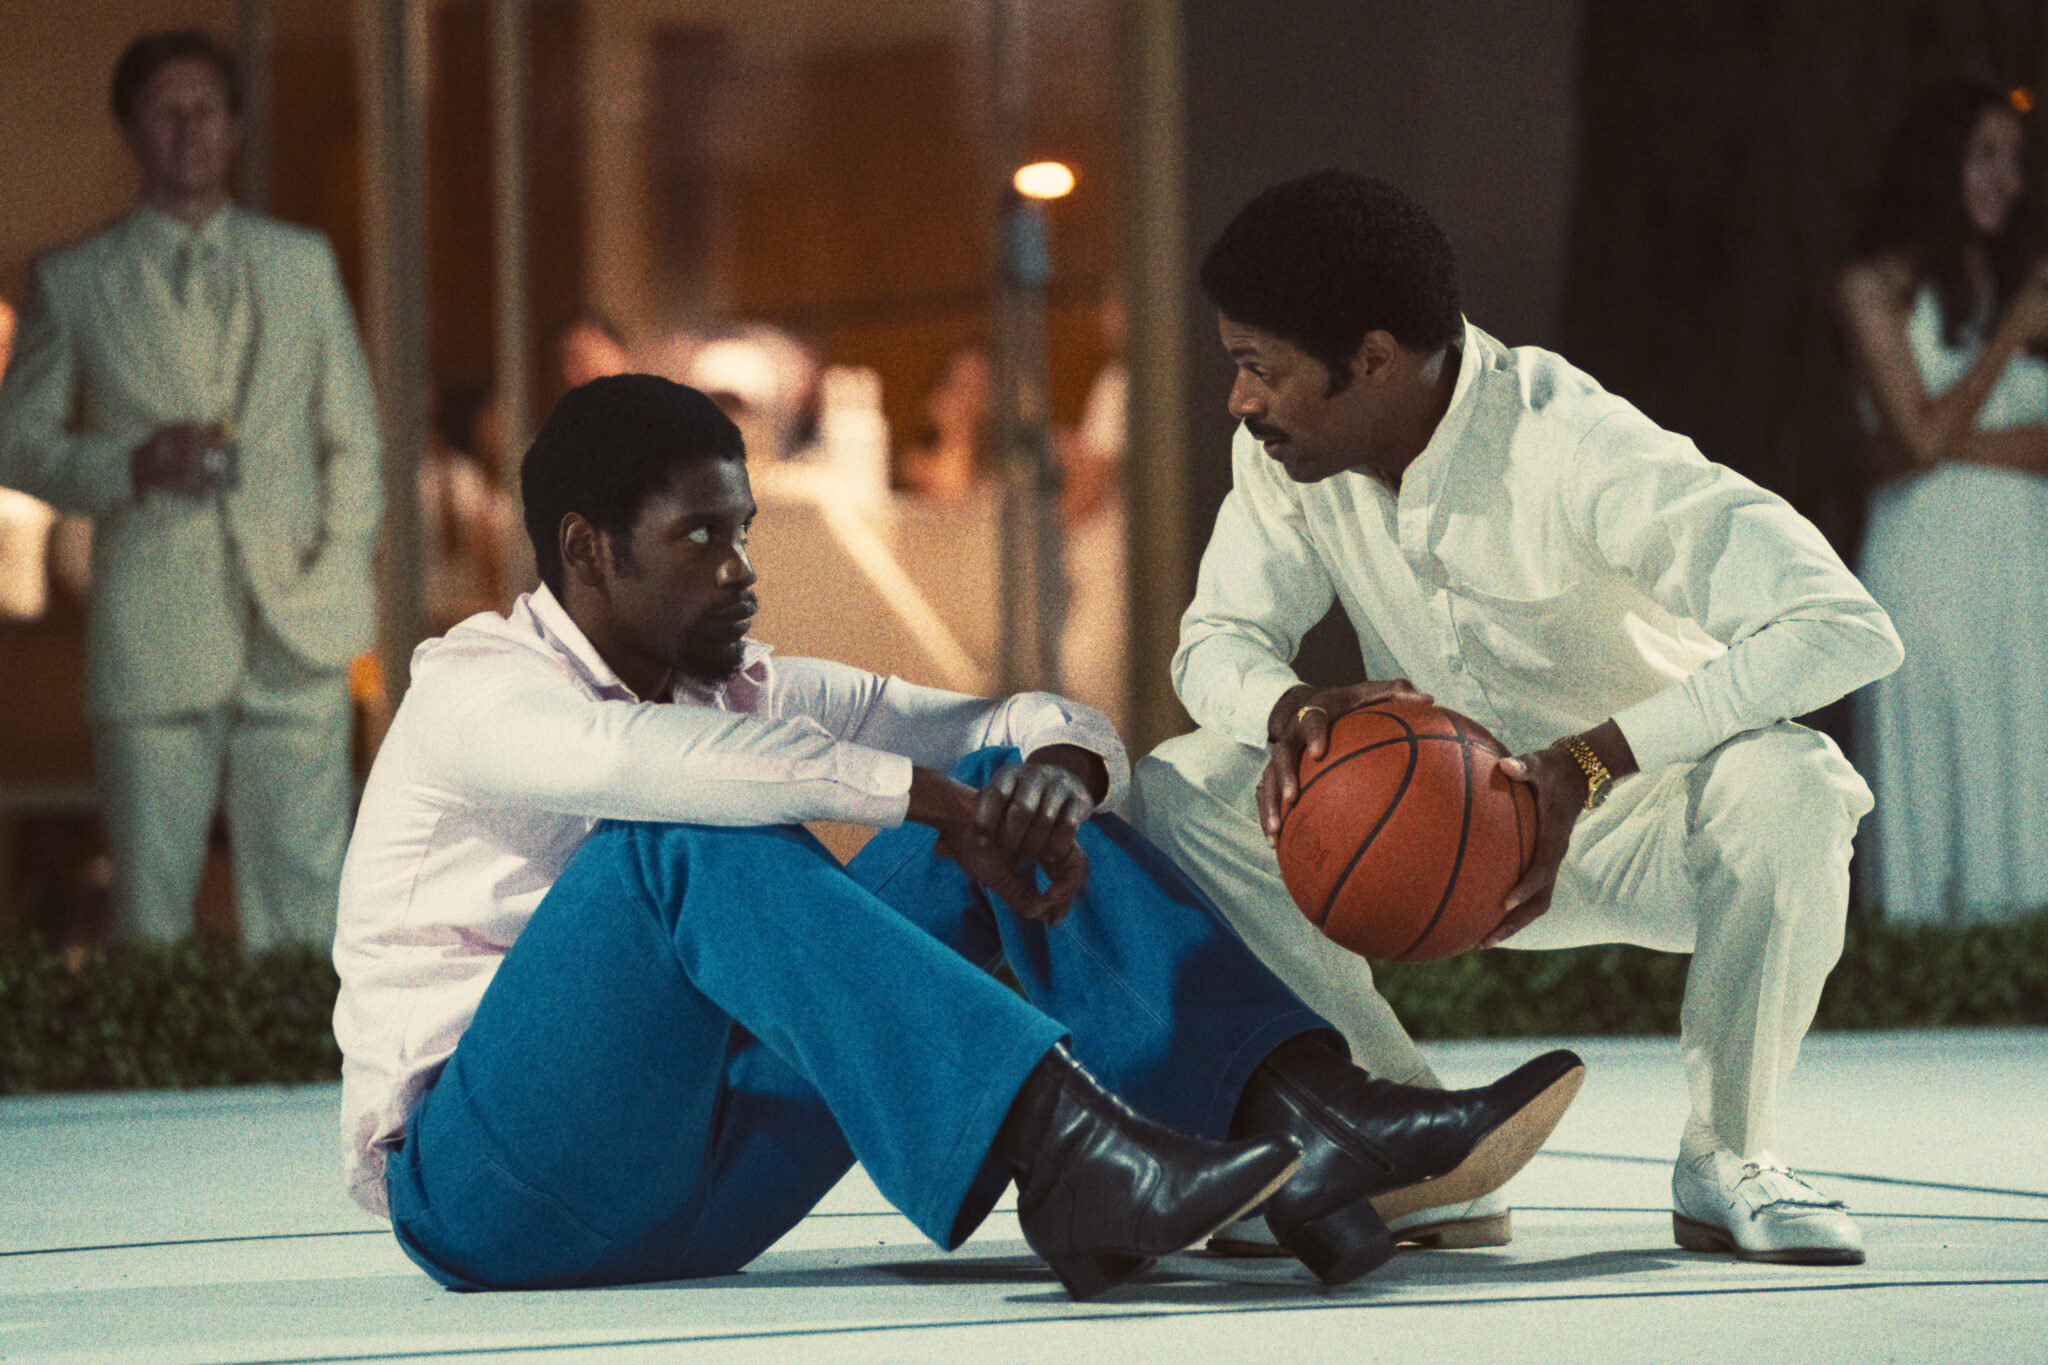 Quincy Isaiah als Basketballlegende Magic Johnson mit seinem Konkurrenten Norm Nixon (DeVaughn Nixon) im Gespräch. Isaiah sitzt auf dem Boden mit blauer Hose und weißem Hemd und Nixon kniet komplett in weiß gewandet vor ihm mit einem Ball in den Händen. Winning Time